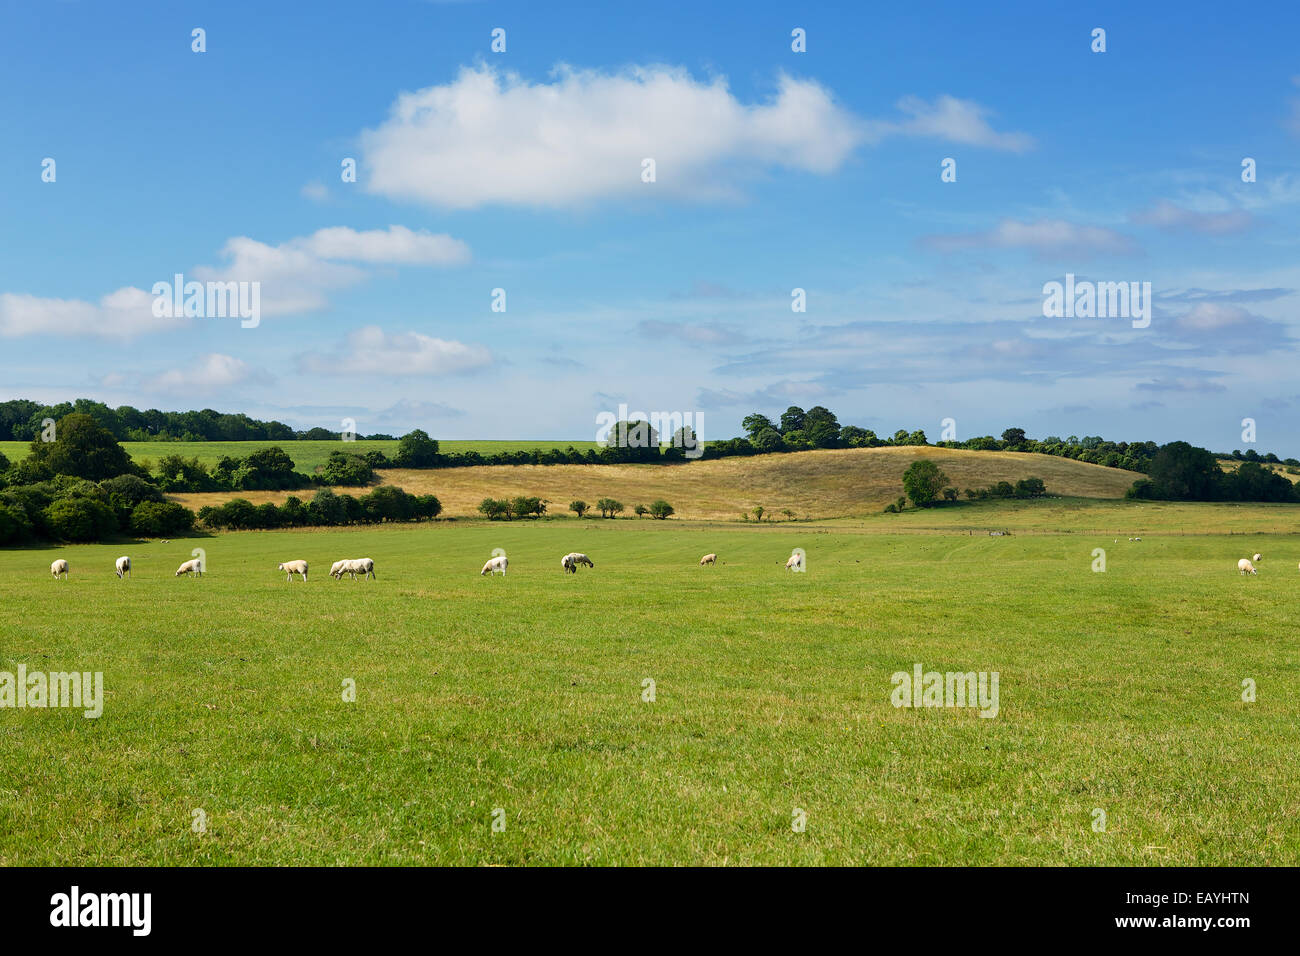 Bereich der Schafe. Schafe weiden auf den South Downs in Hampshire, England. Grünen Wiesen und blauem Himmel; eine typische ländliche Szene. Stockfoto